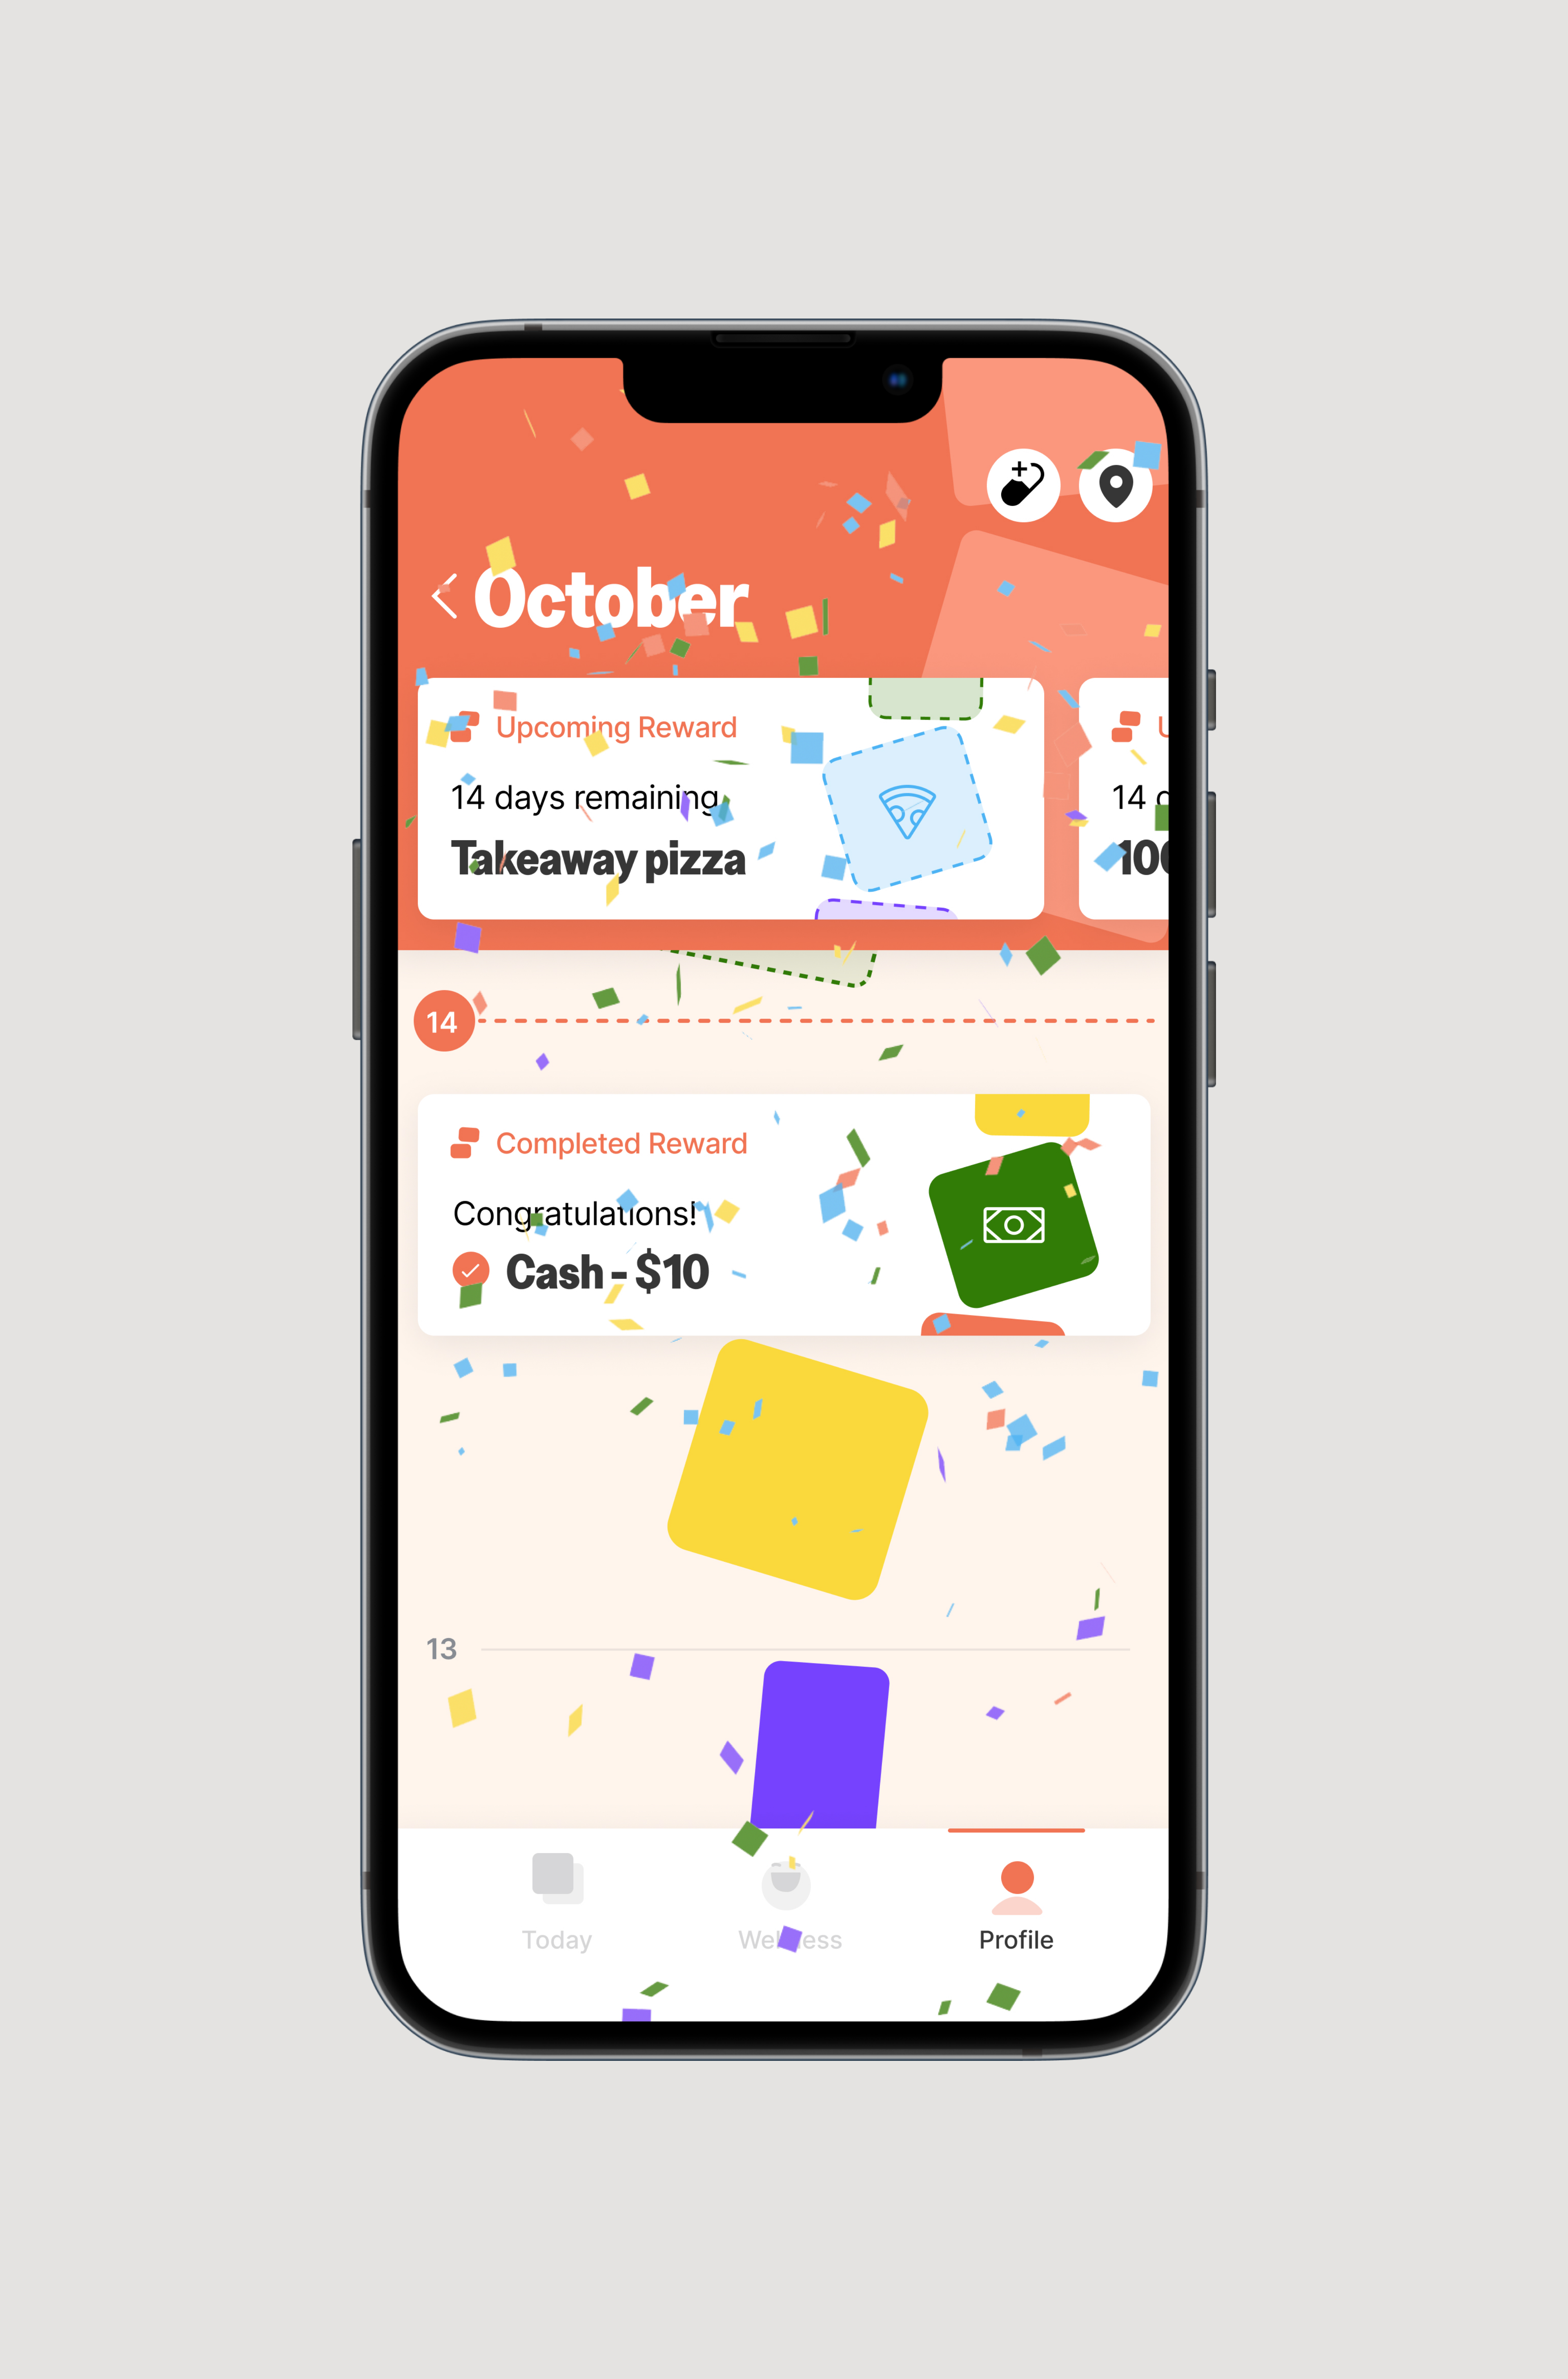 Levl award celebration in the app